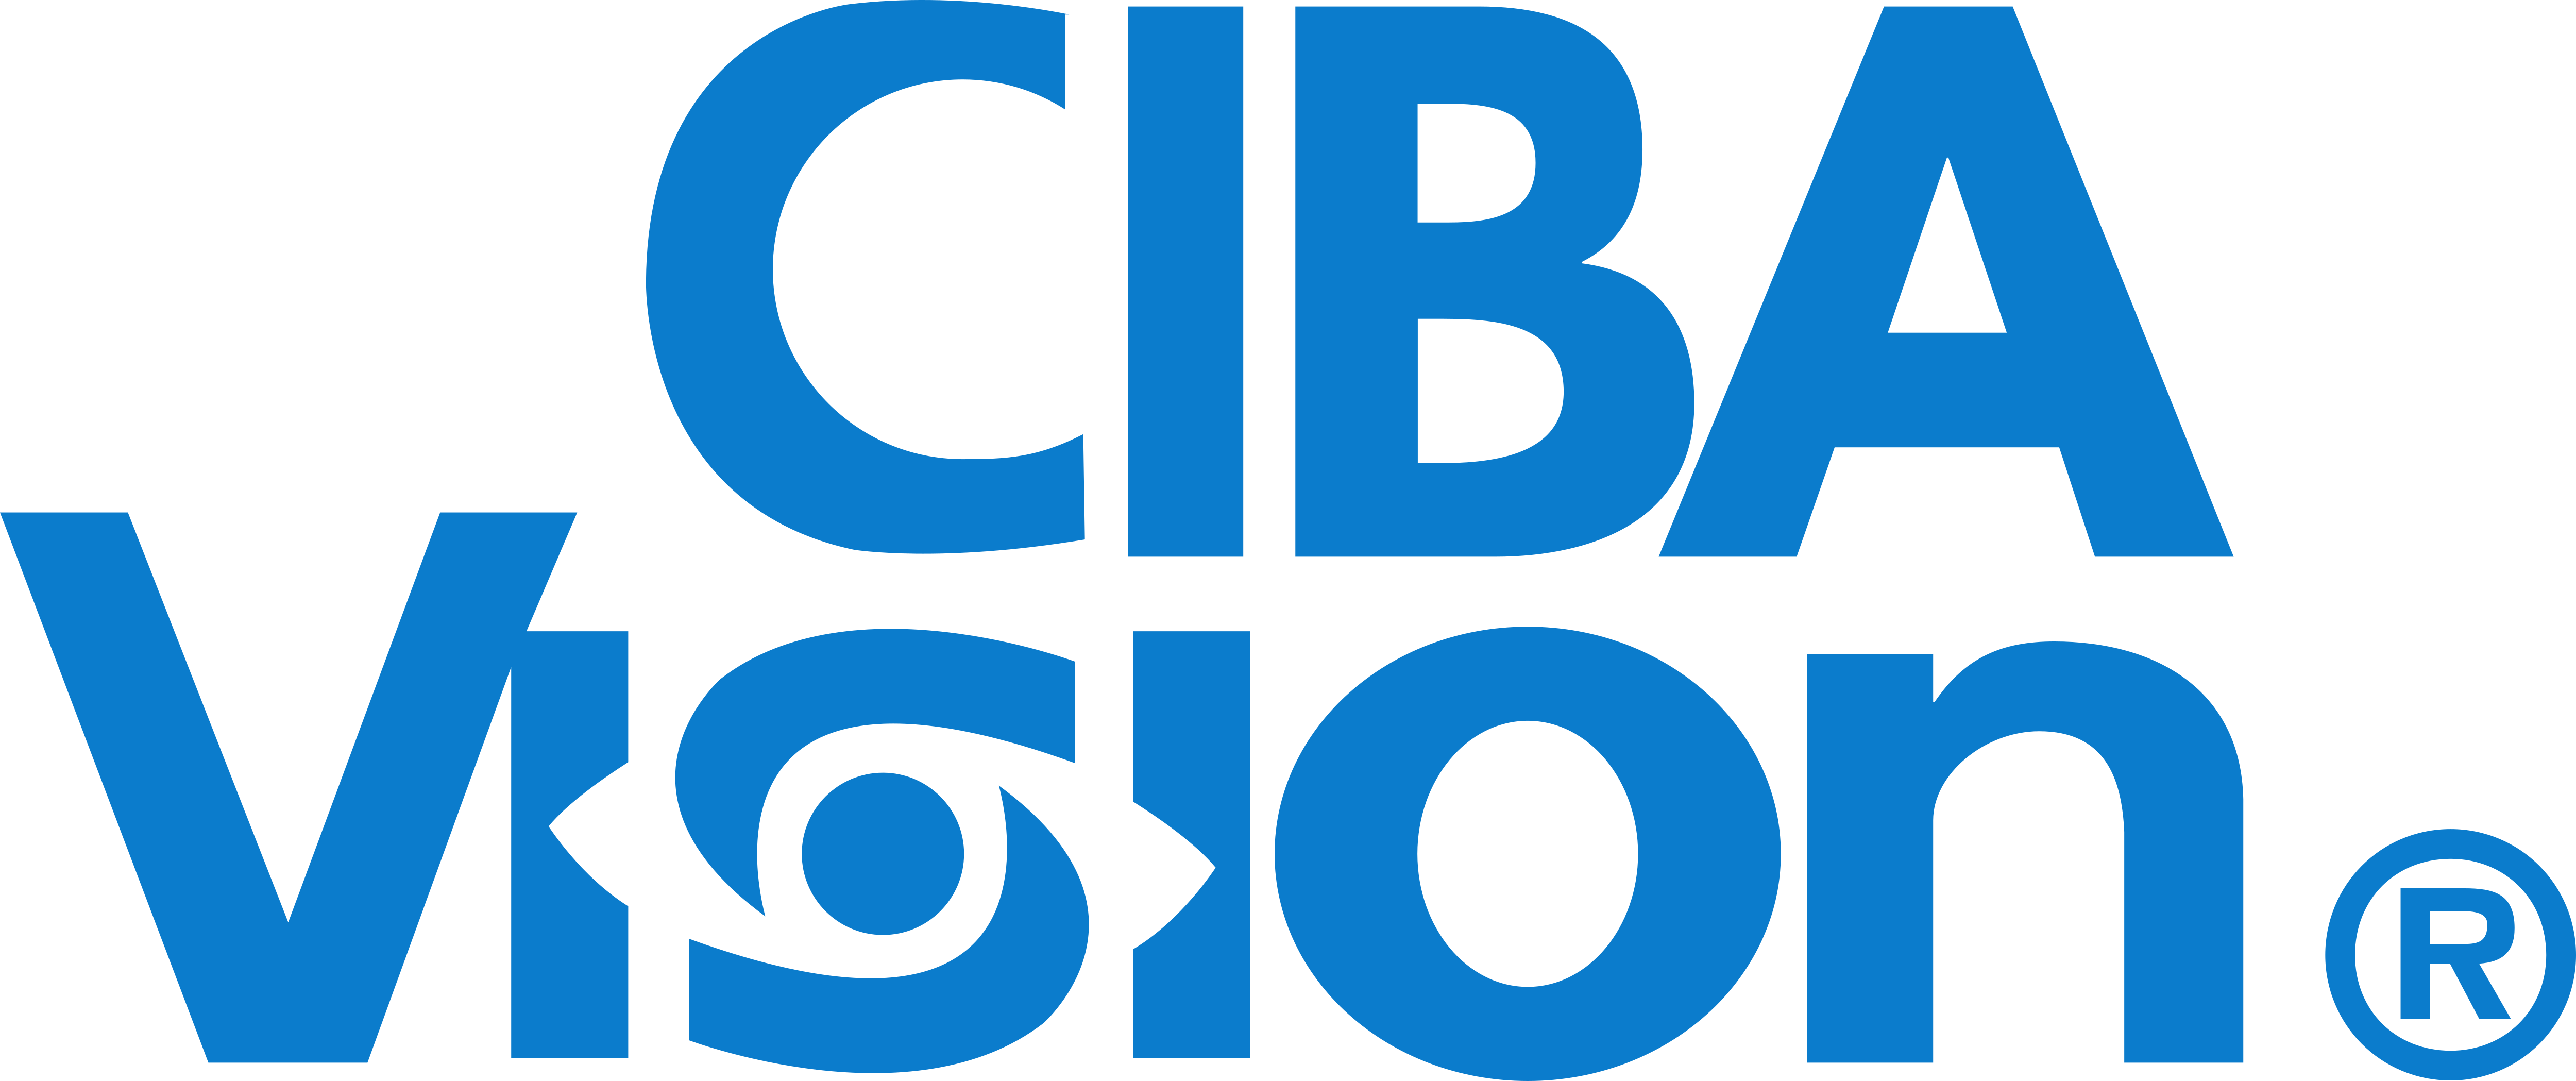 ciba-vision-logos-download